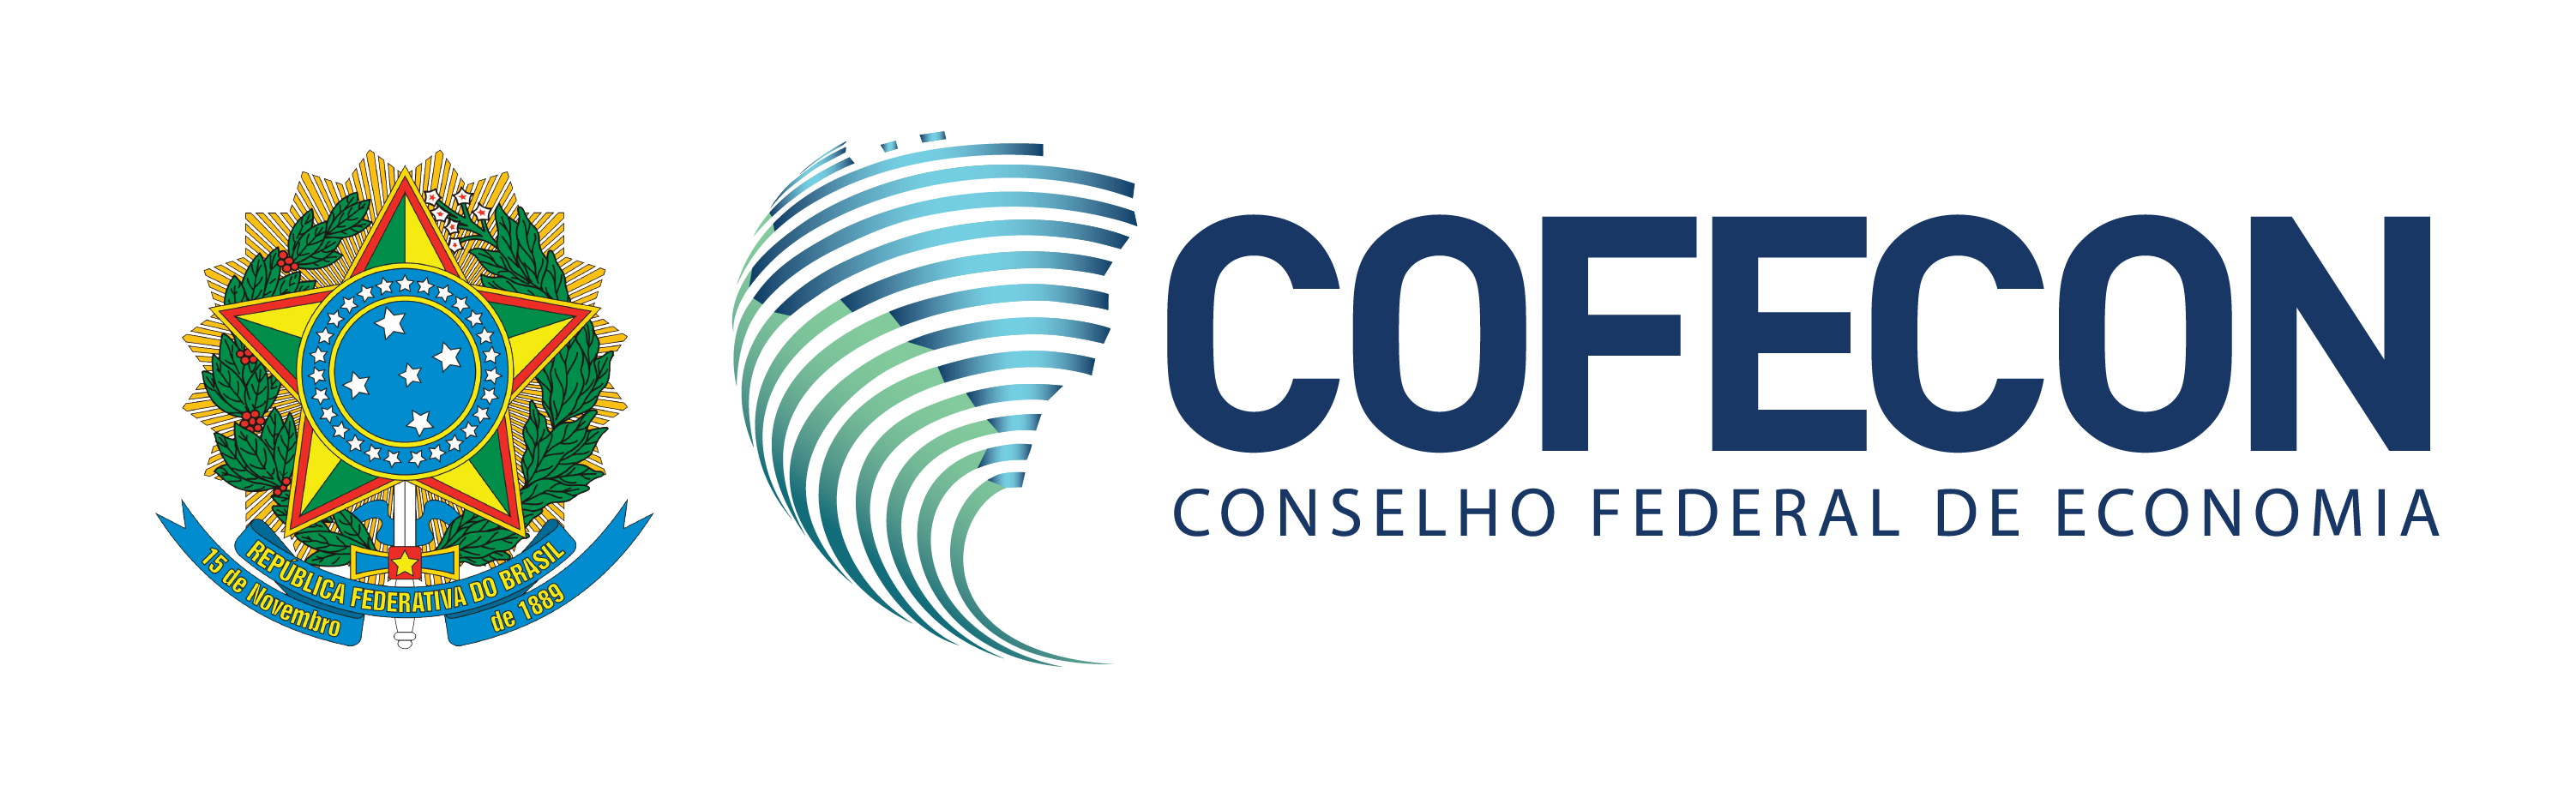 Conselho Federal de Economia – COFECON